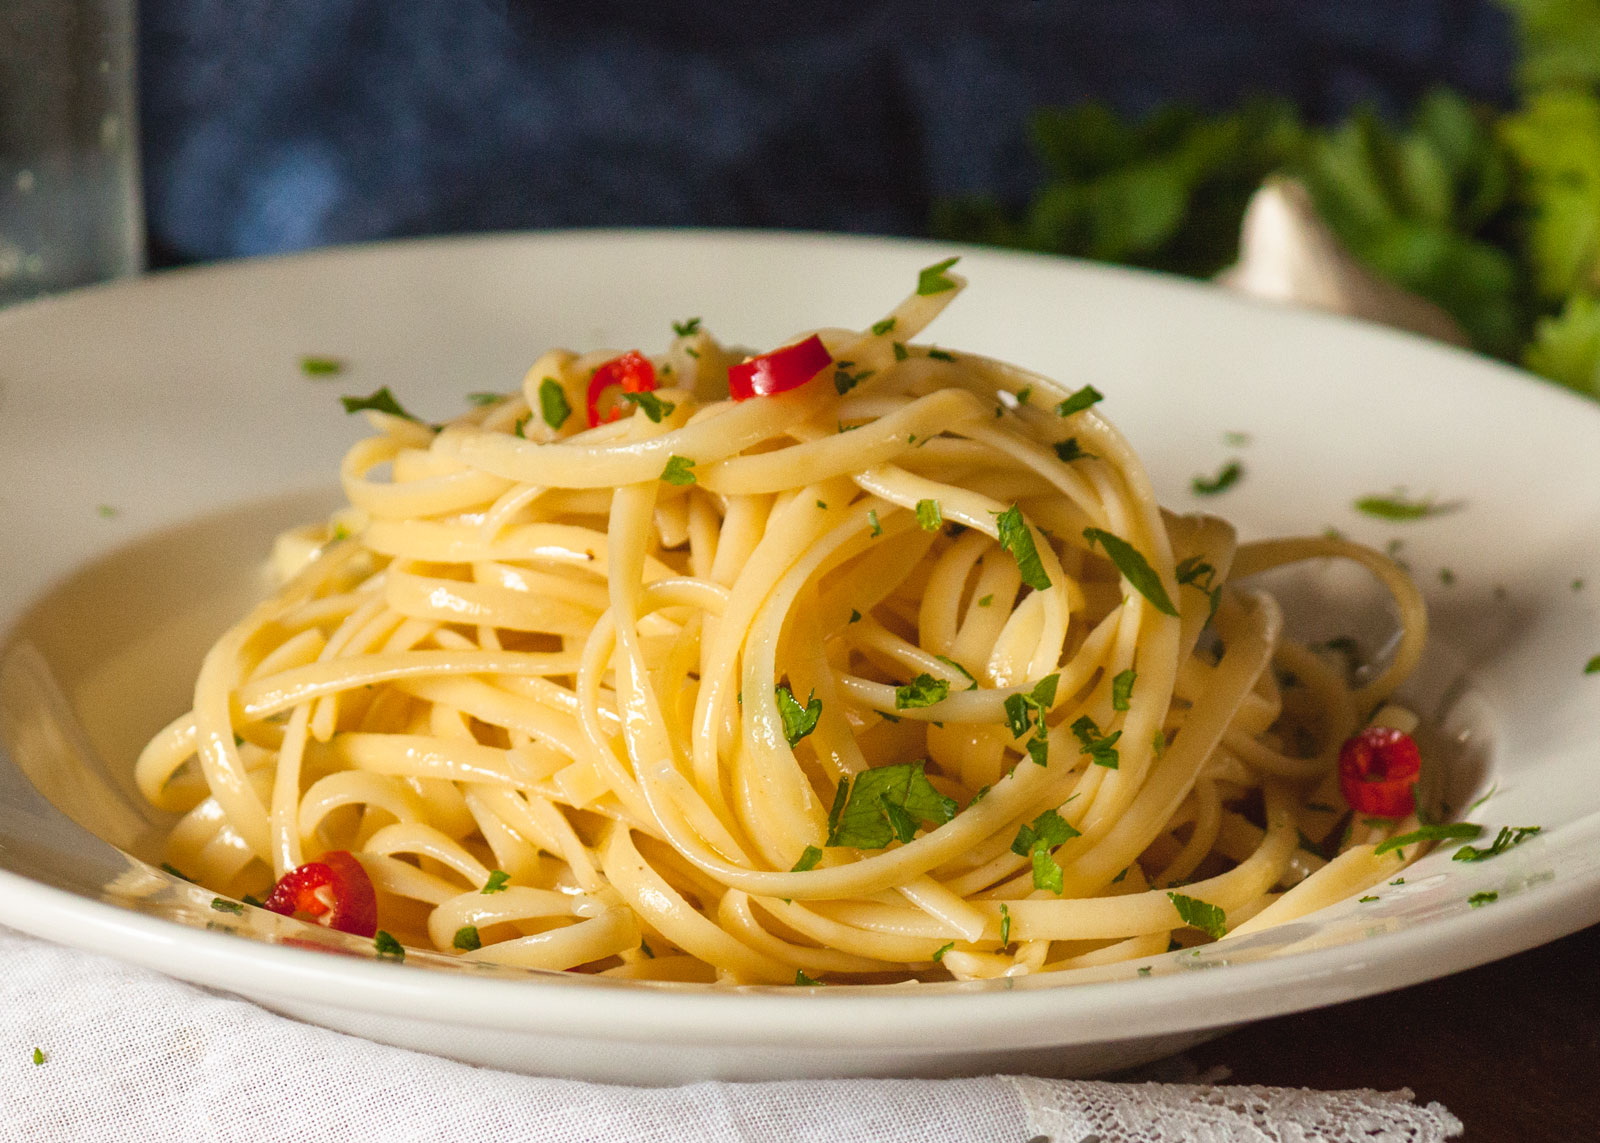 Ricetta spaghetti aglio, olio e peperoncino: ingredienti, preparazione ...